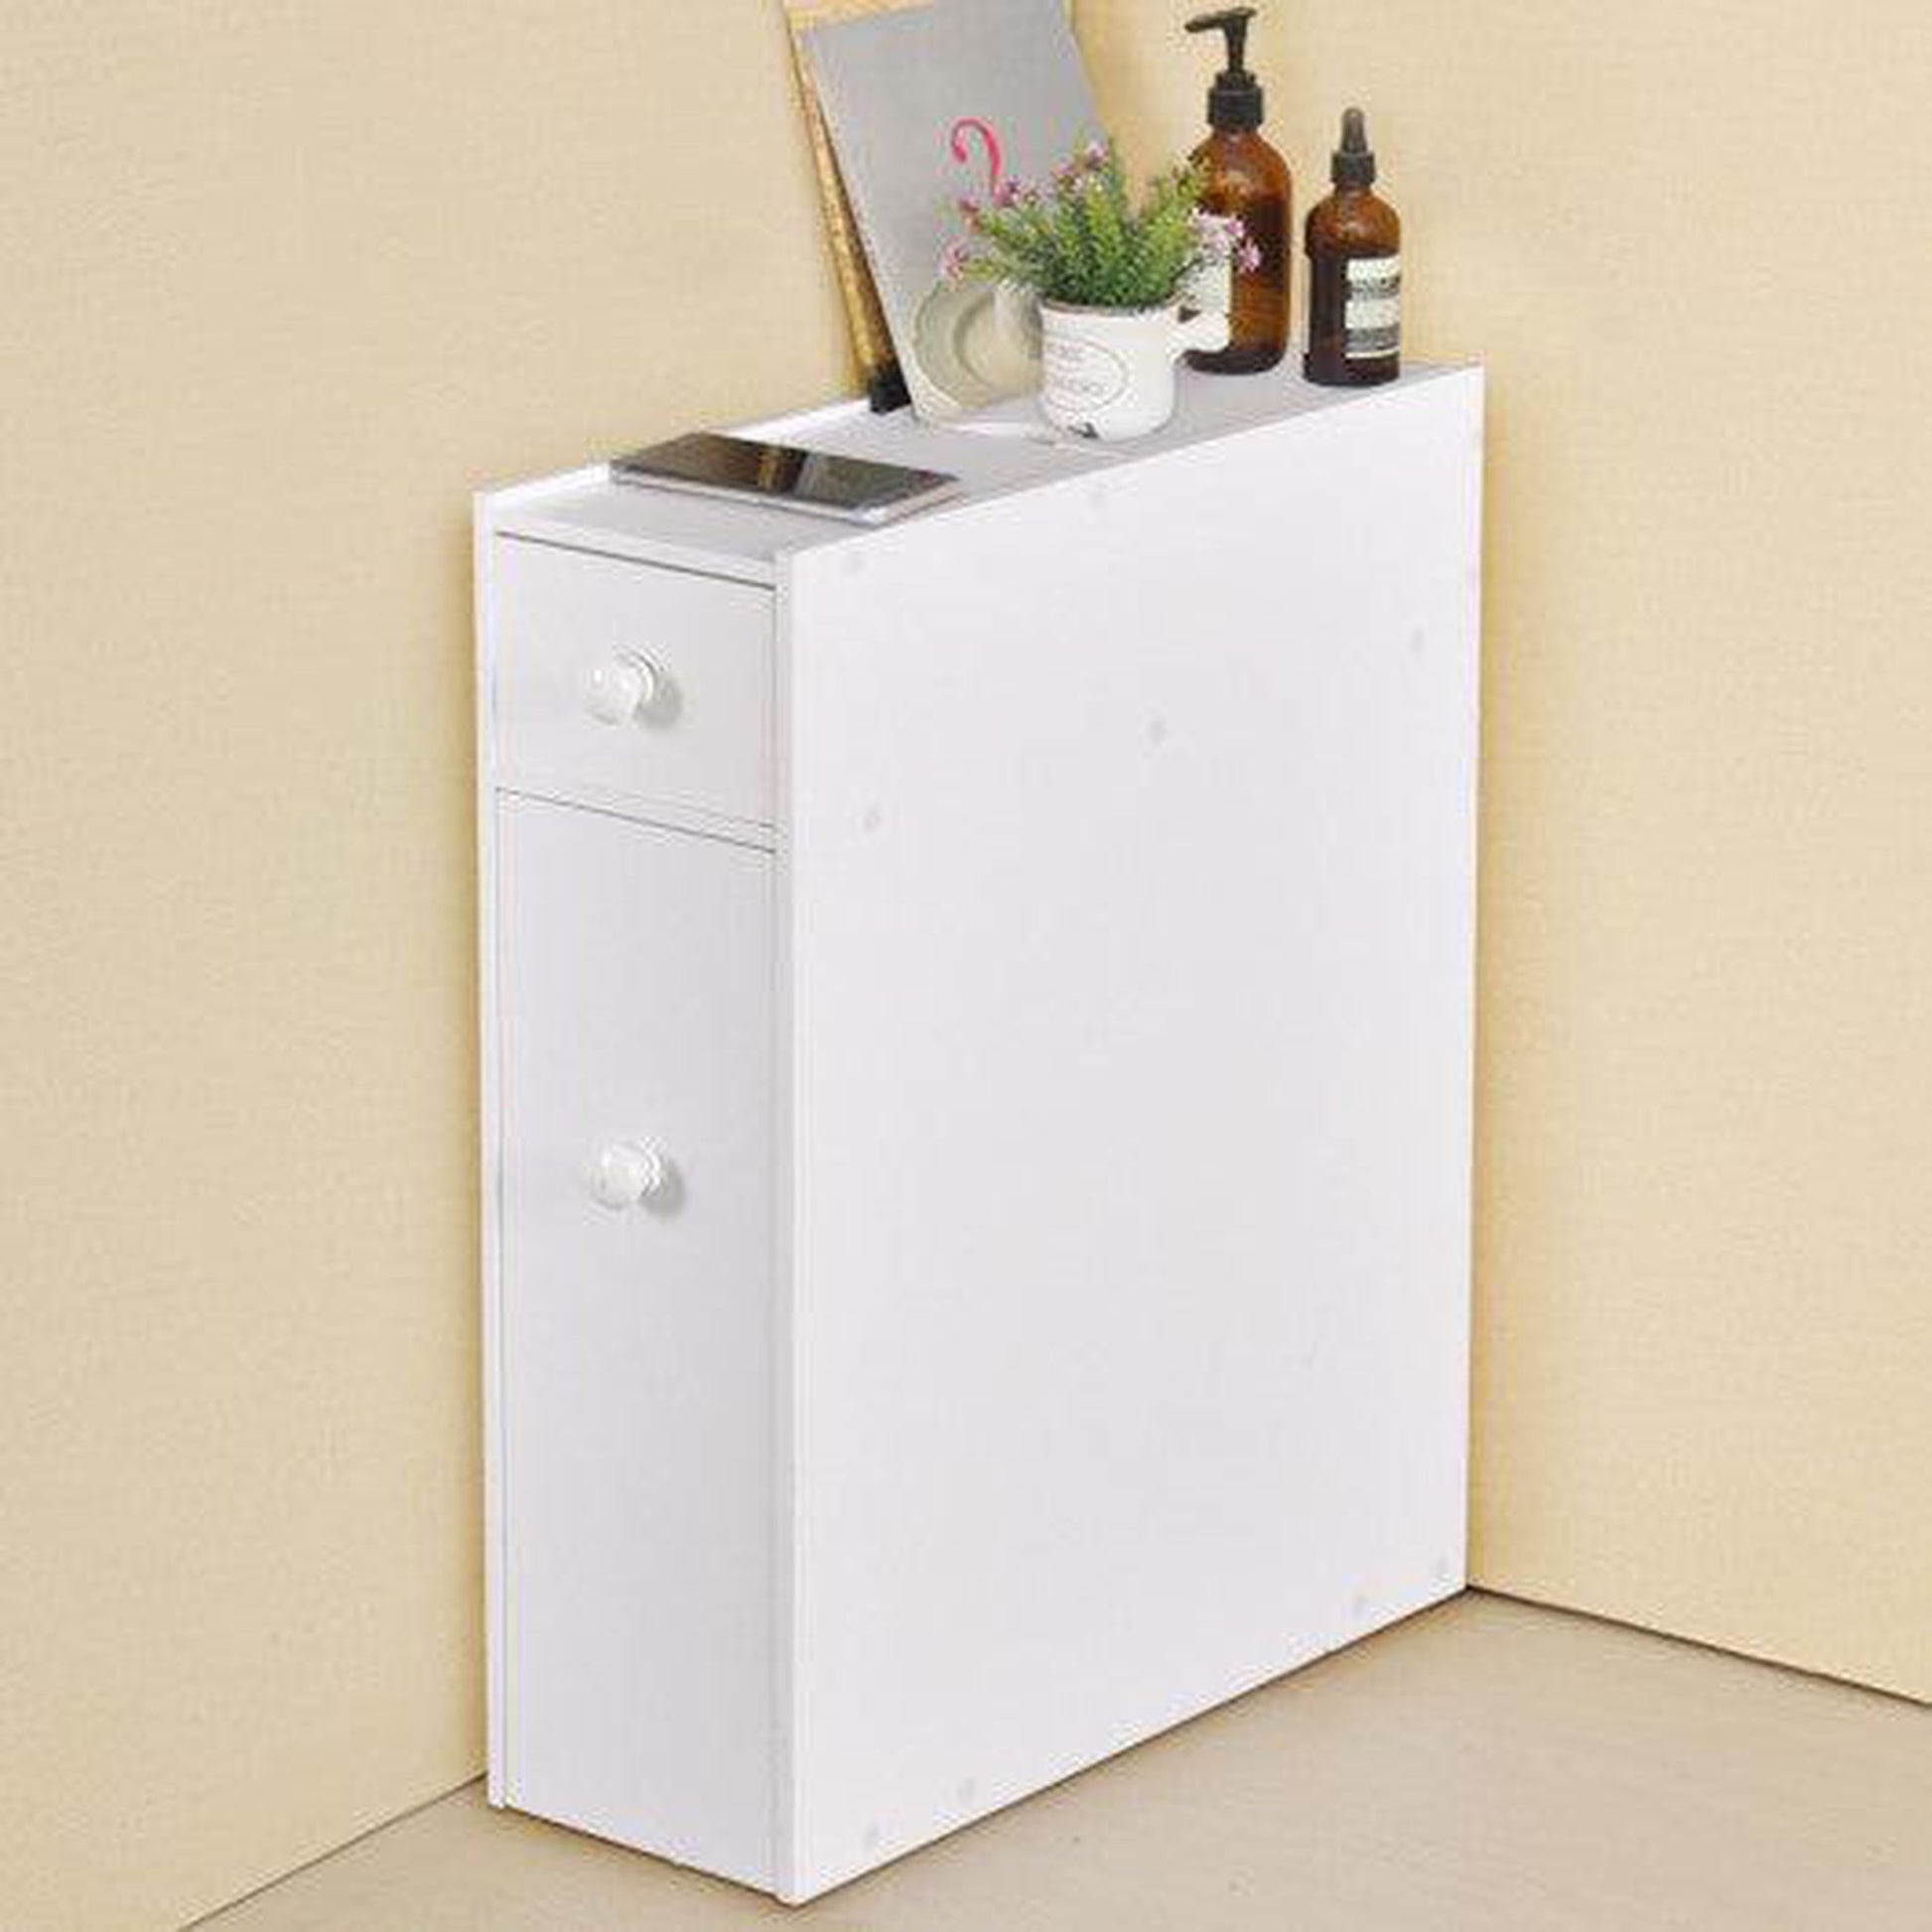 Costway White Bathroom Cabinet Space Saver Storage Organizer